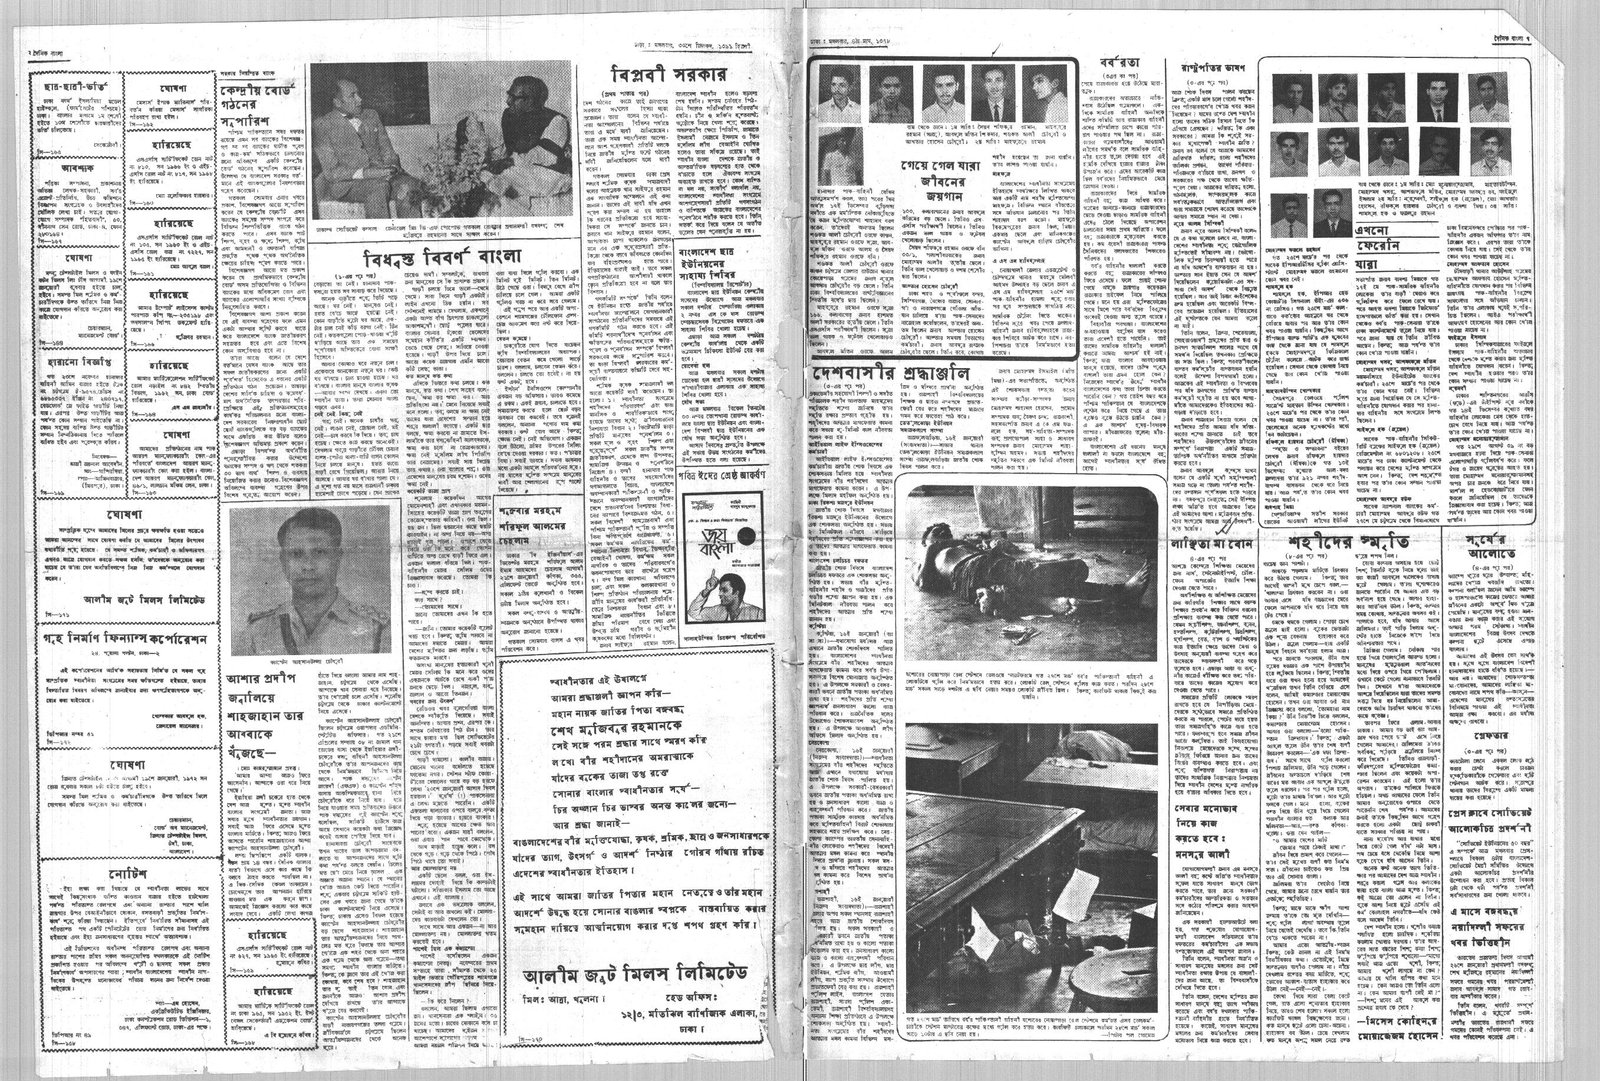 18JAN1972-DAINIK BANGLA-Regular-Page 2 and 7